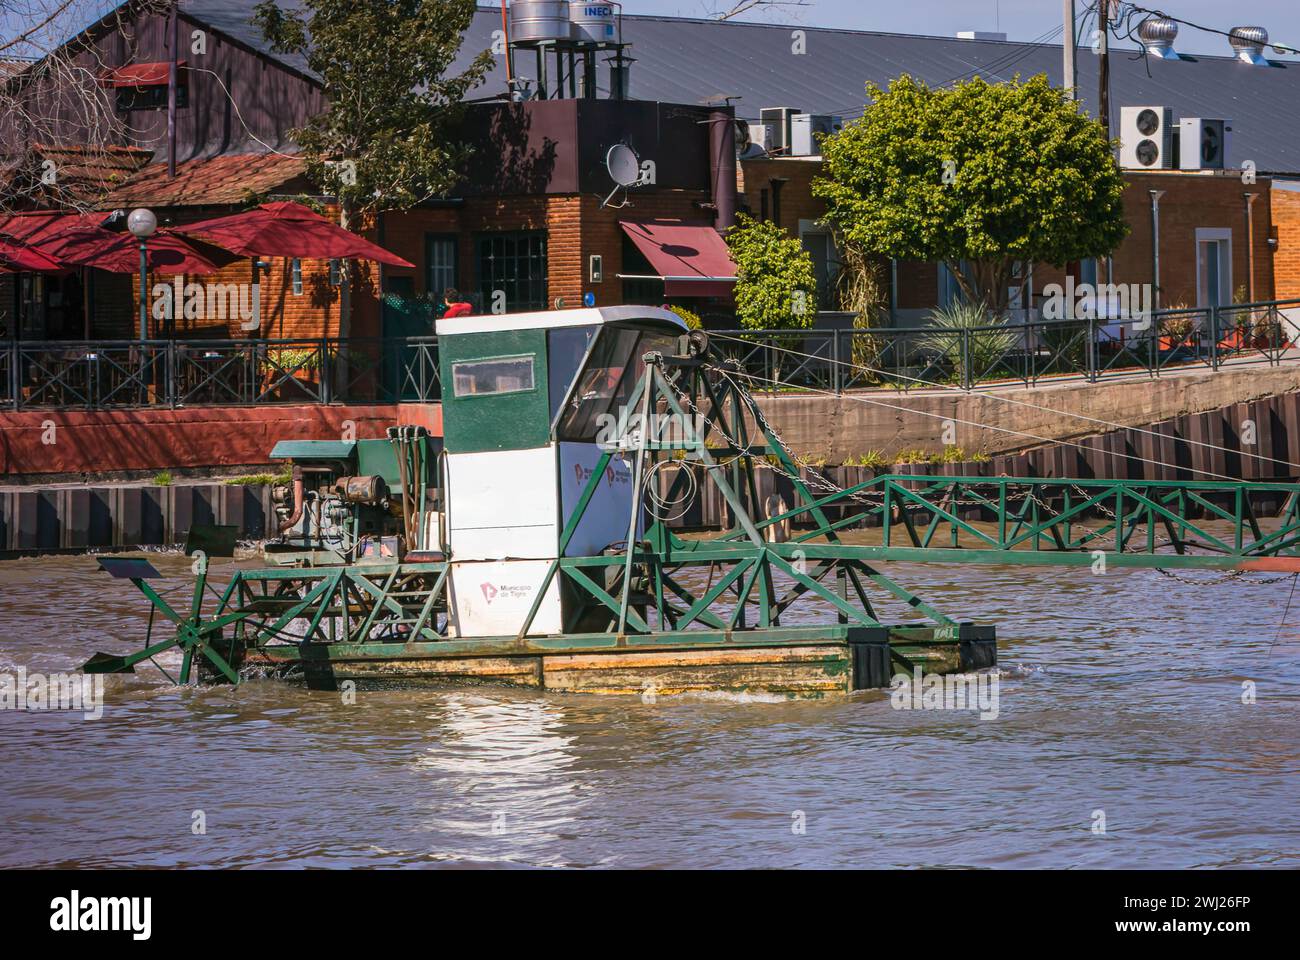 Tigre, Argentinien, 6. September 2011: Reinigung des Wassers: Ein Tag auf den Kanälen Stockfoto